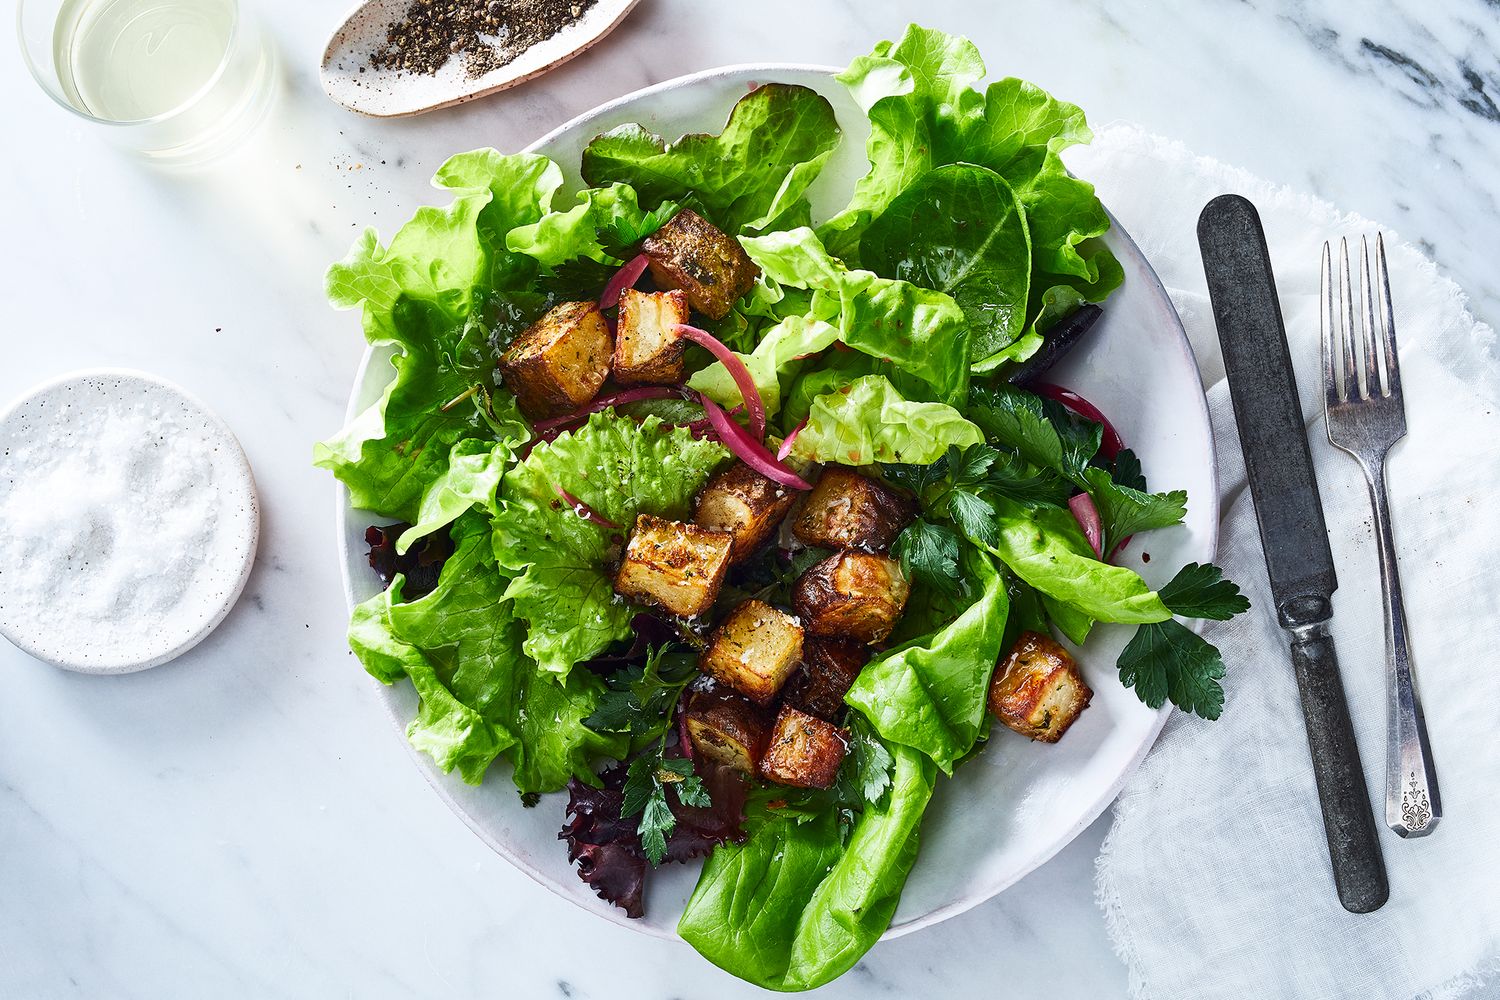 Salad Recipes - Food52